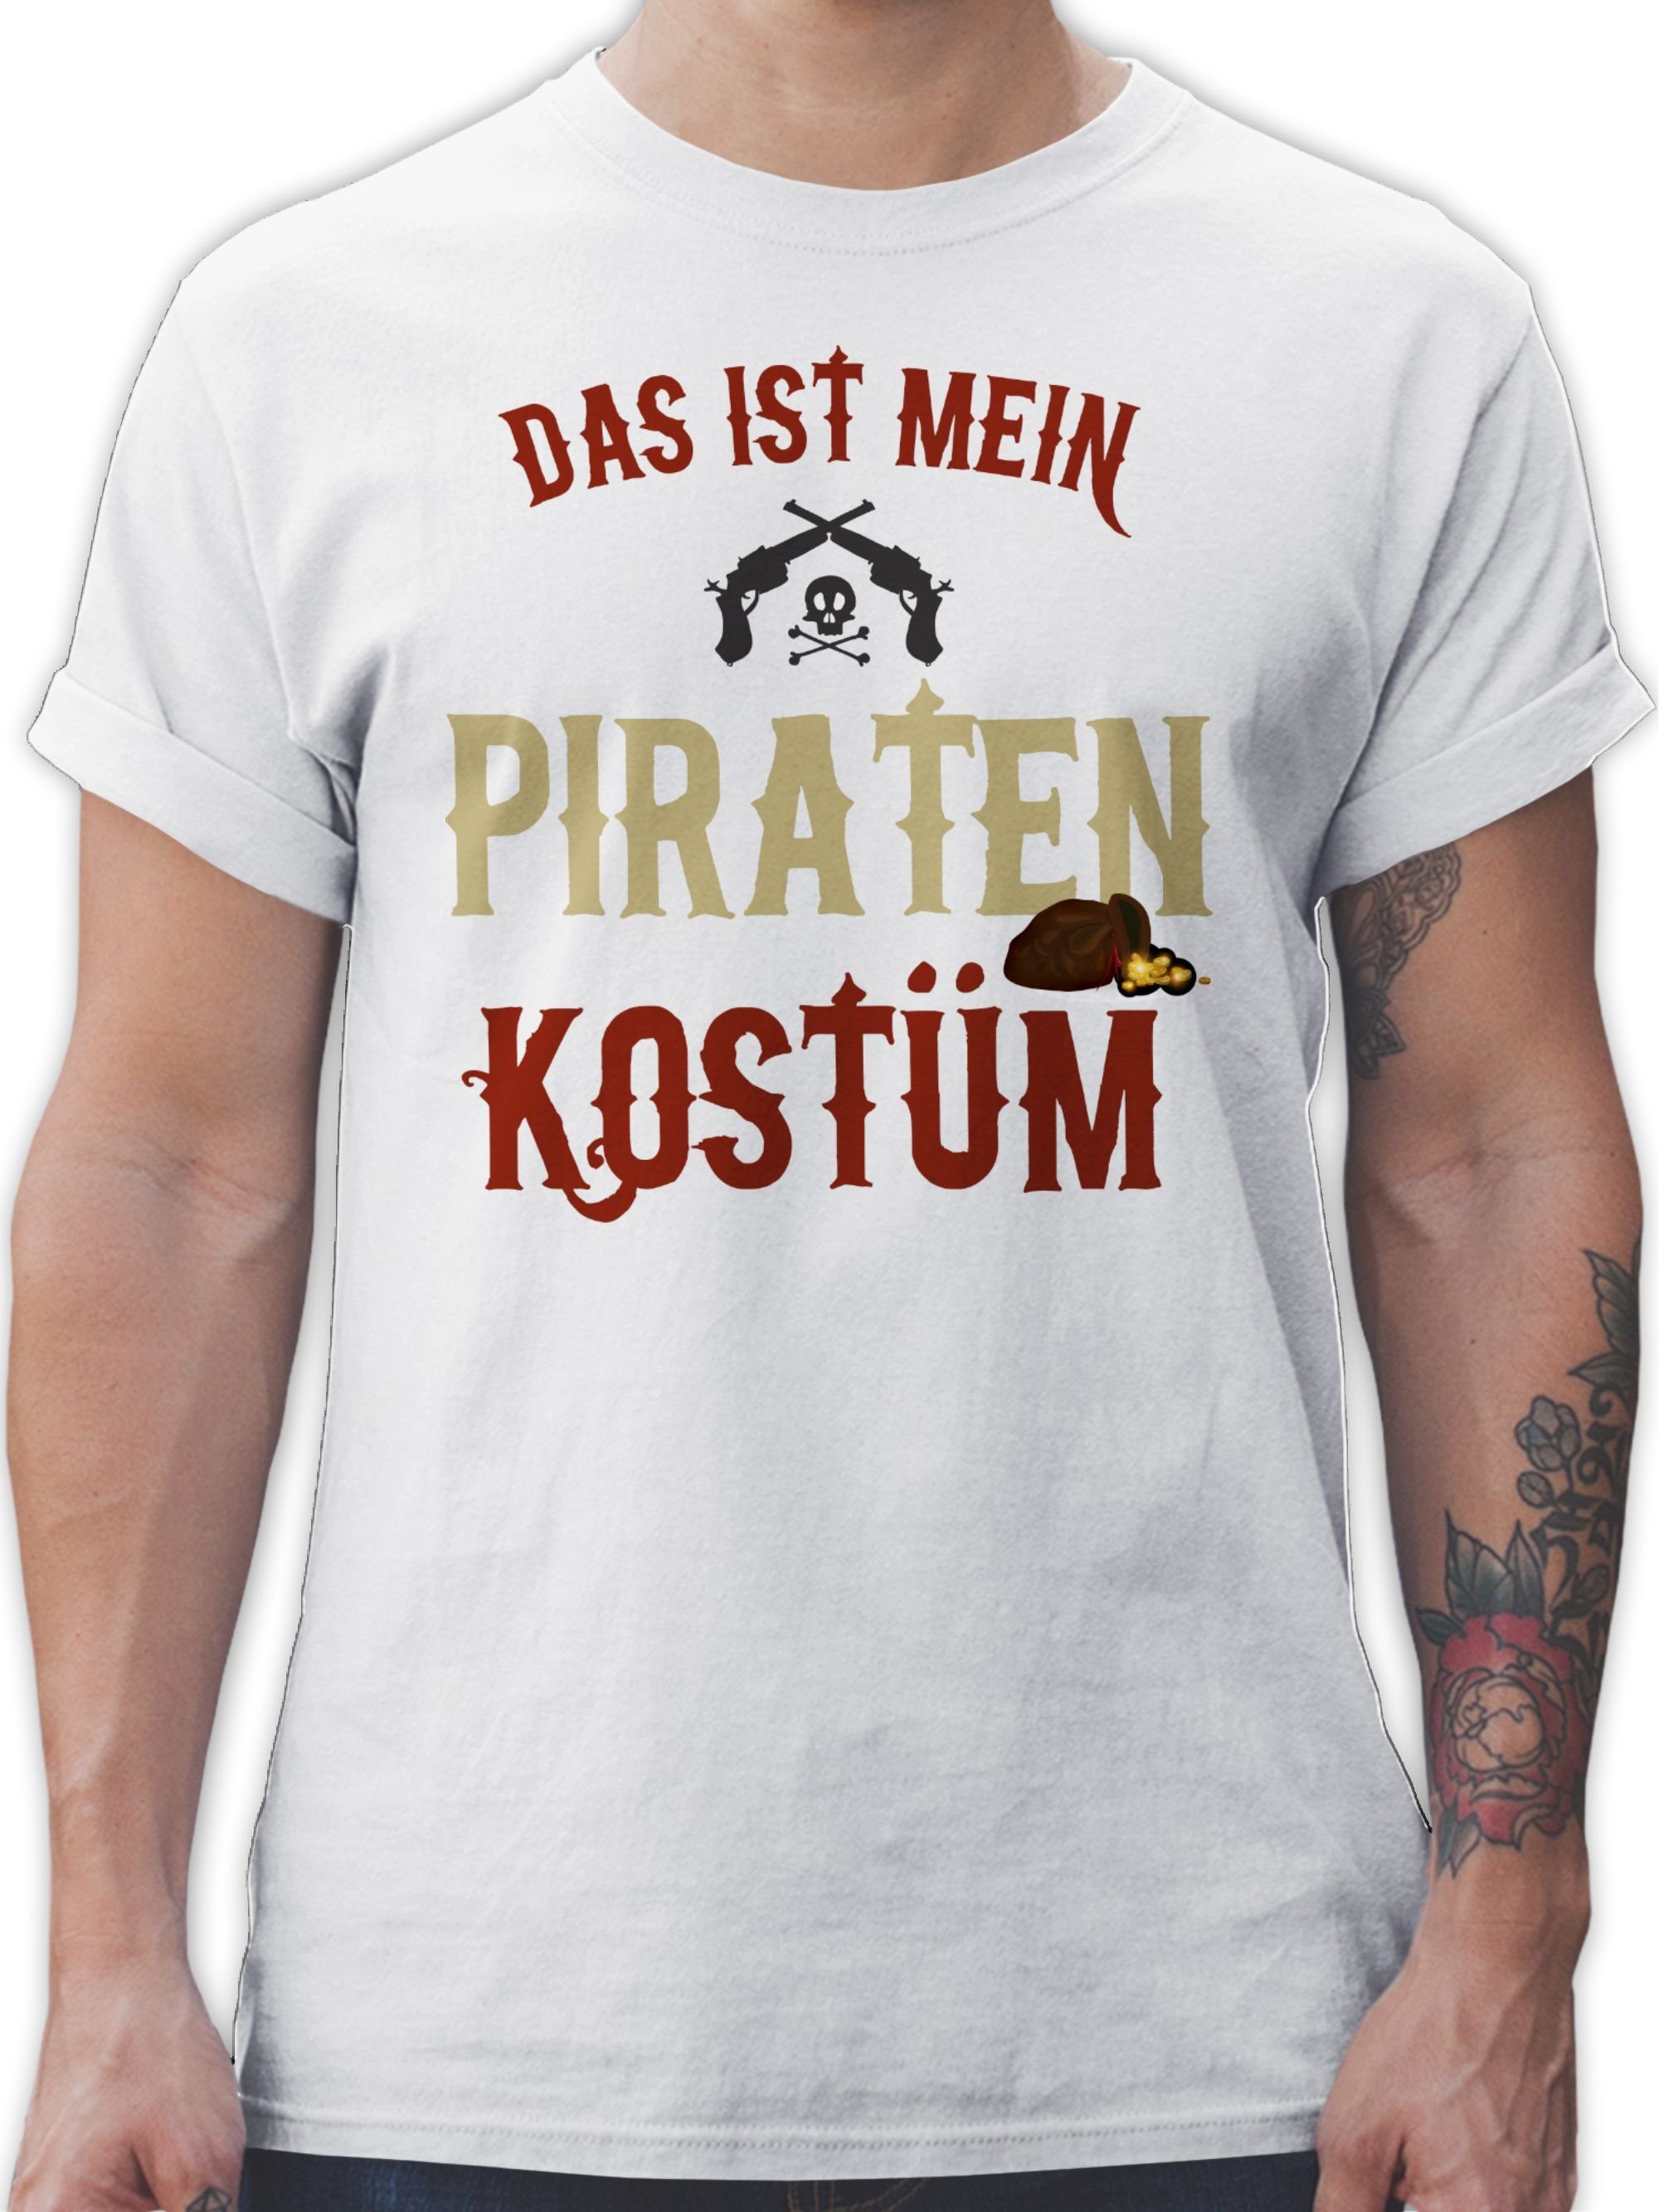 verkleidet ist Piratenkostüm Kostüm Das Karneval Outfit Weiß Pirat 02 Shirtracer T-Shirt mein - Piraten